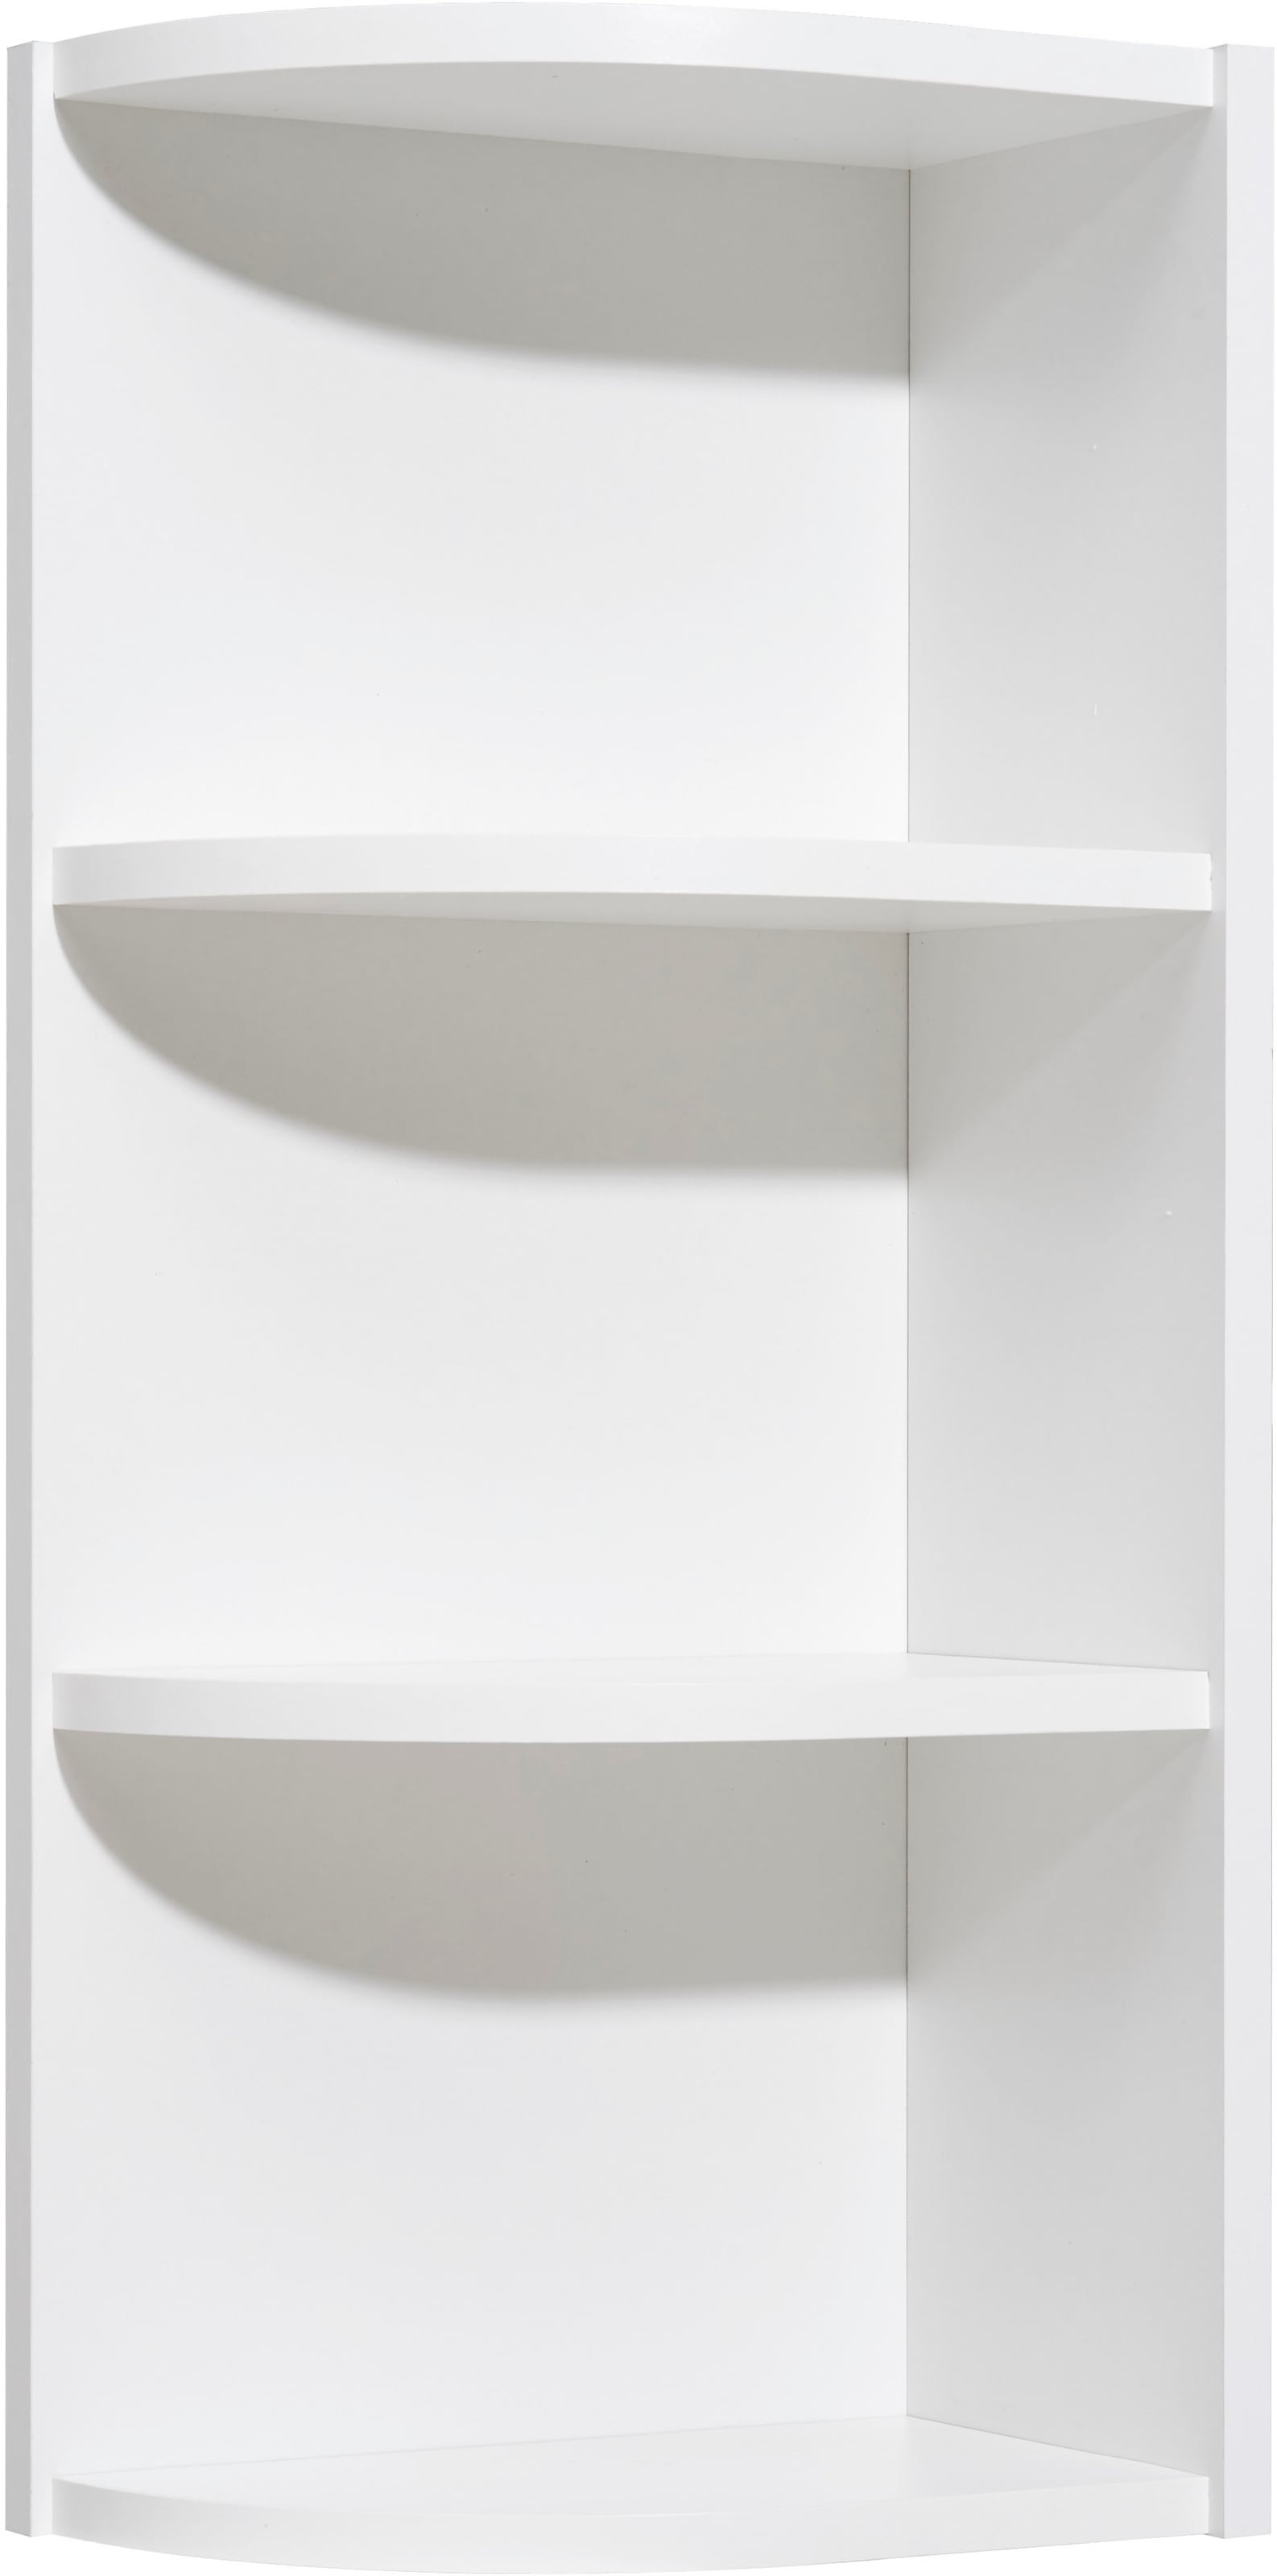 Saphir Eckregal »Quickset 335 Abschlussecke für Hängeschrank, 30,7 cm breit«, 70 cm hoch, 2 feste Böden, Regal in Weiß, Badezimmerhängeregal